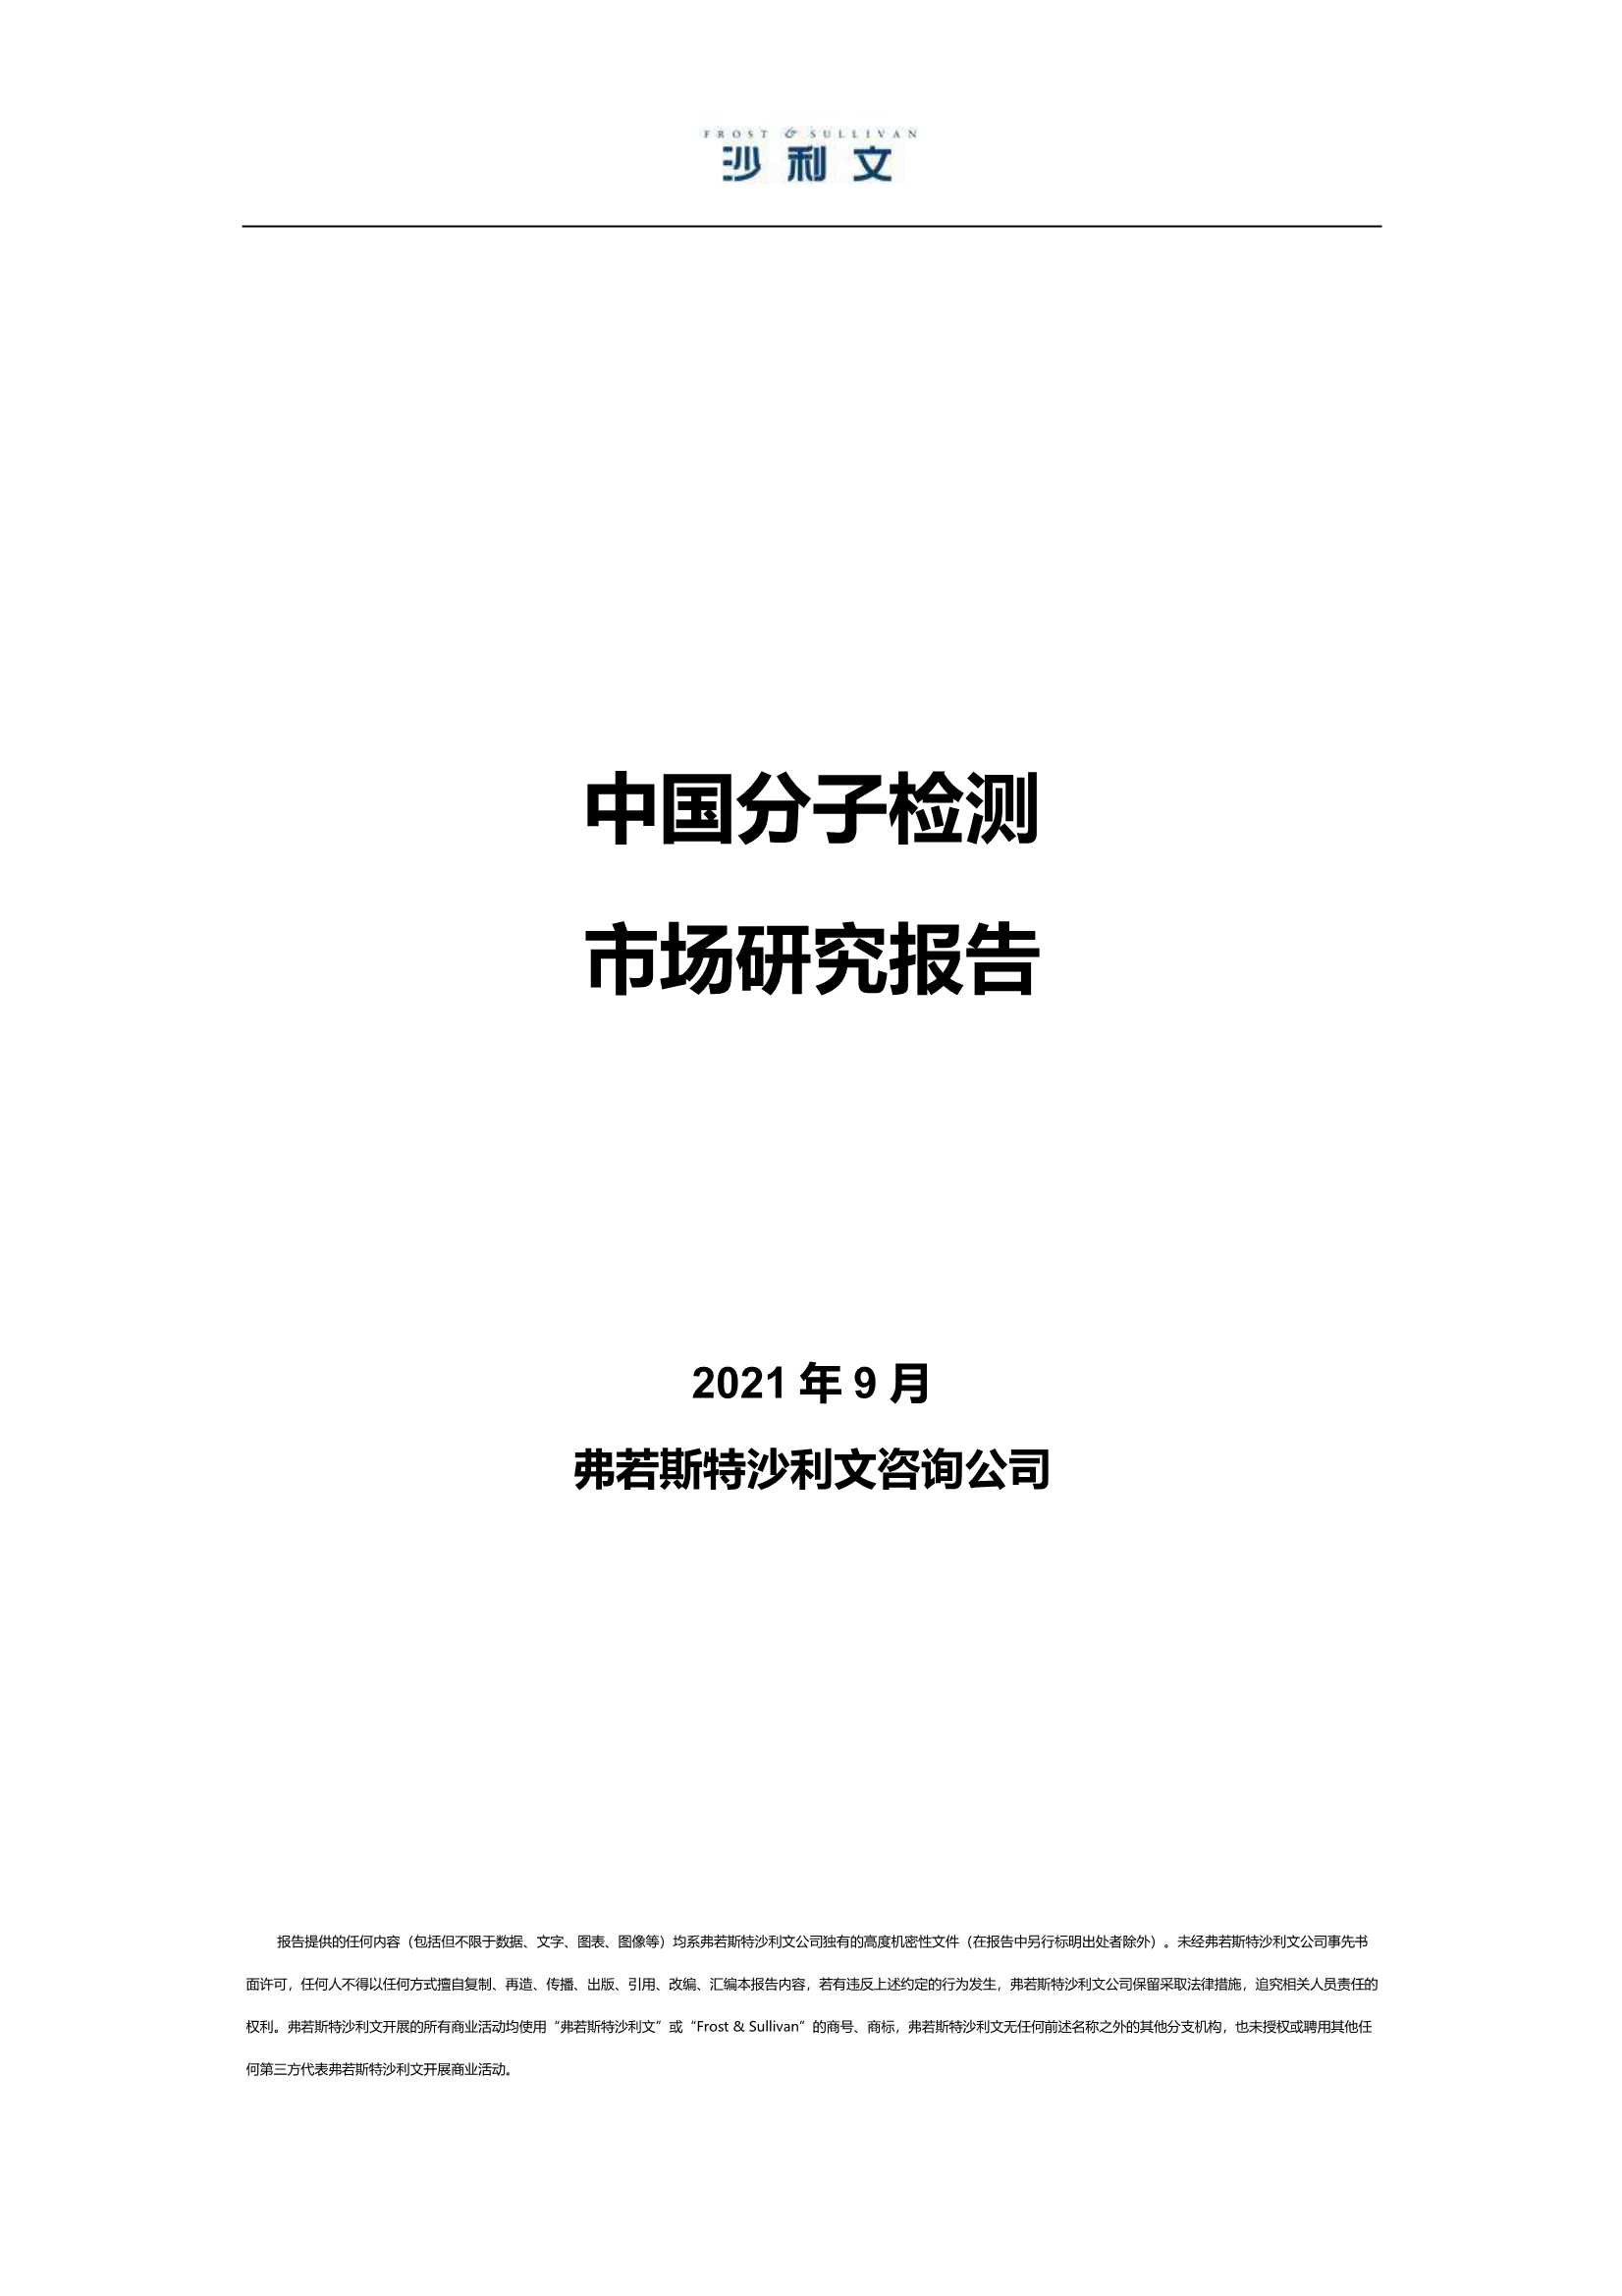 弗若斯特沙利文-中国分子检测行业市场研究报告-2021.10-24页